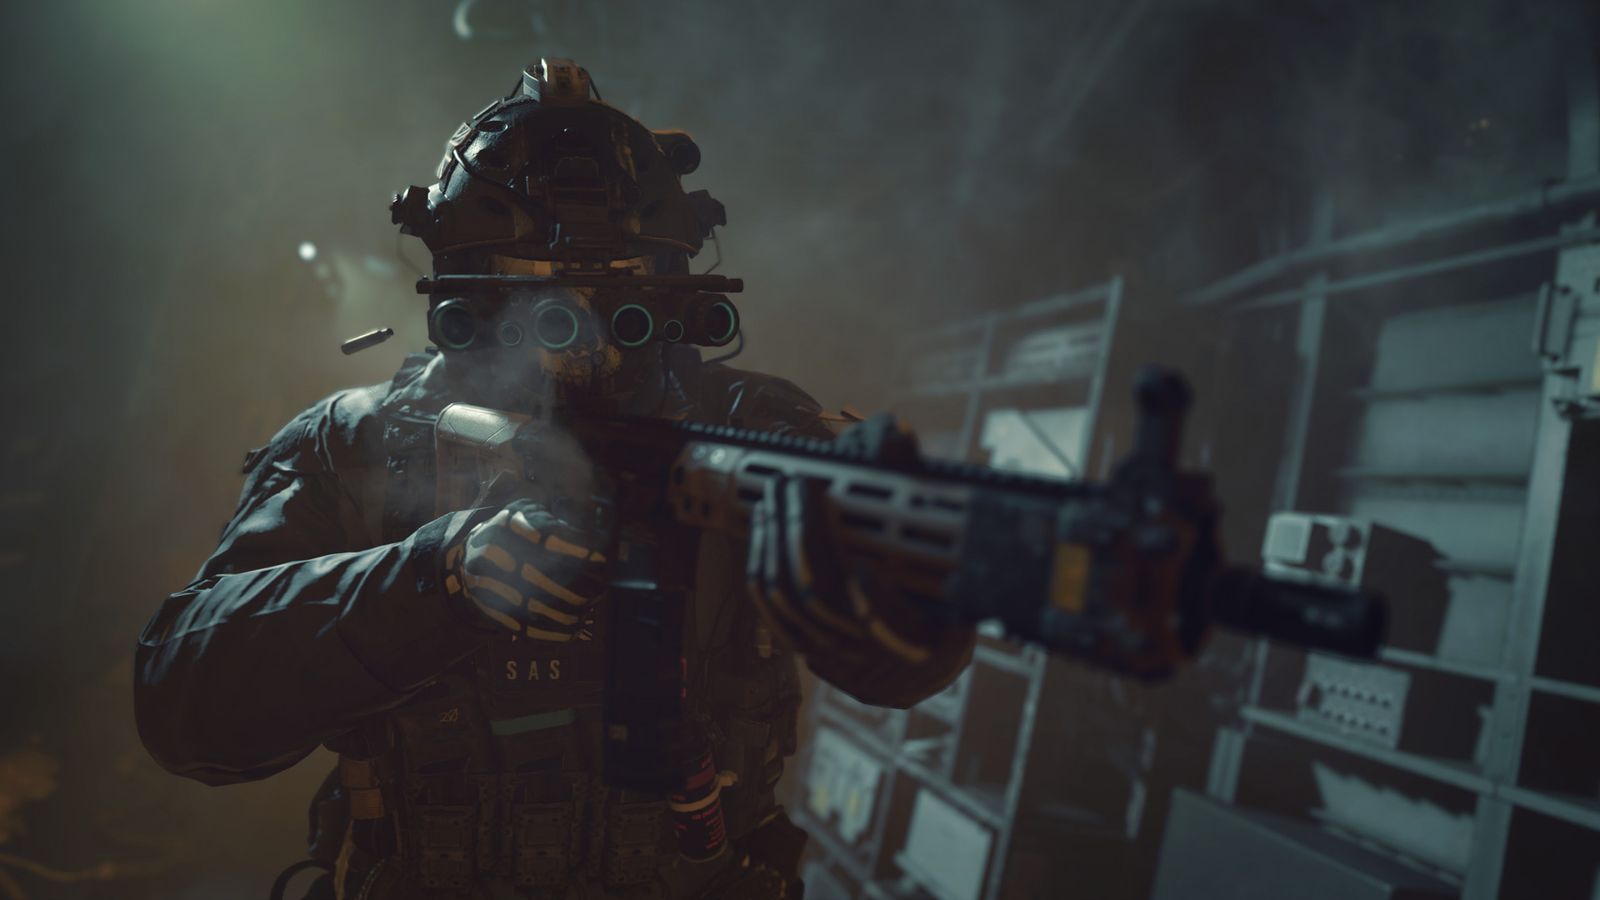 A soldier firing a gun - Modern Warfare 2 authenticator issue